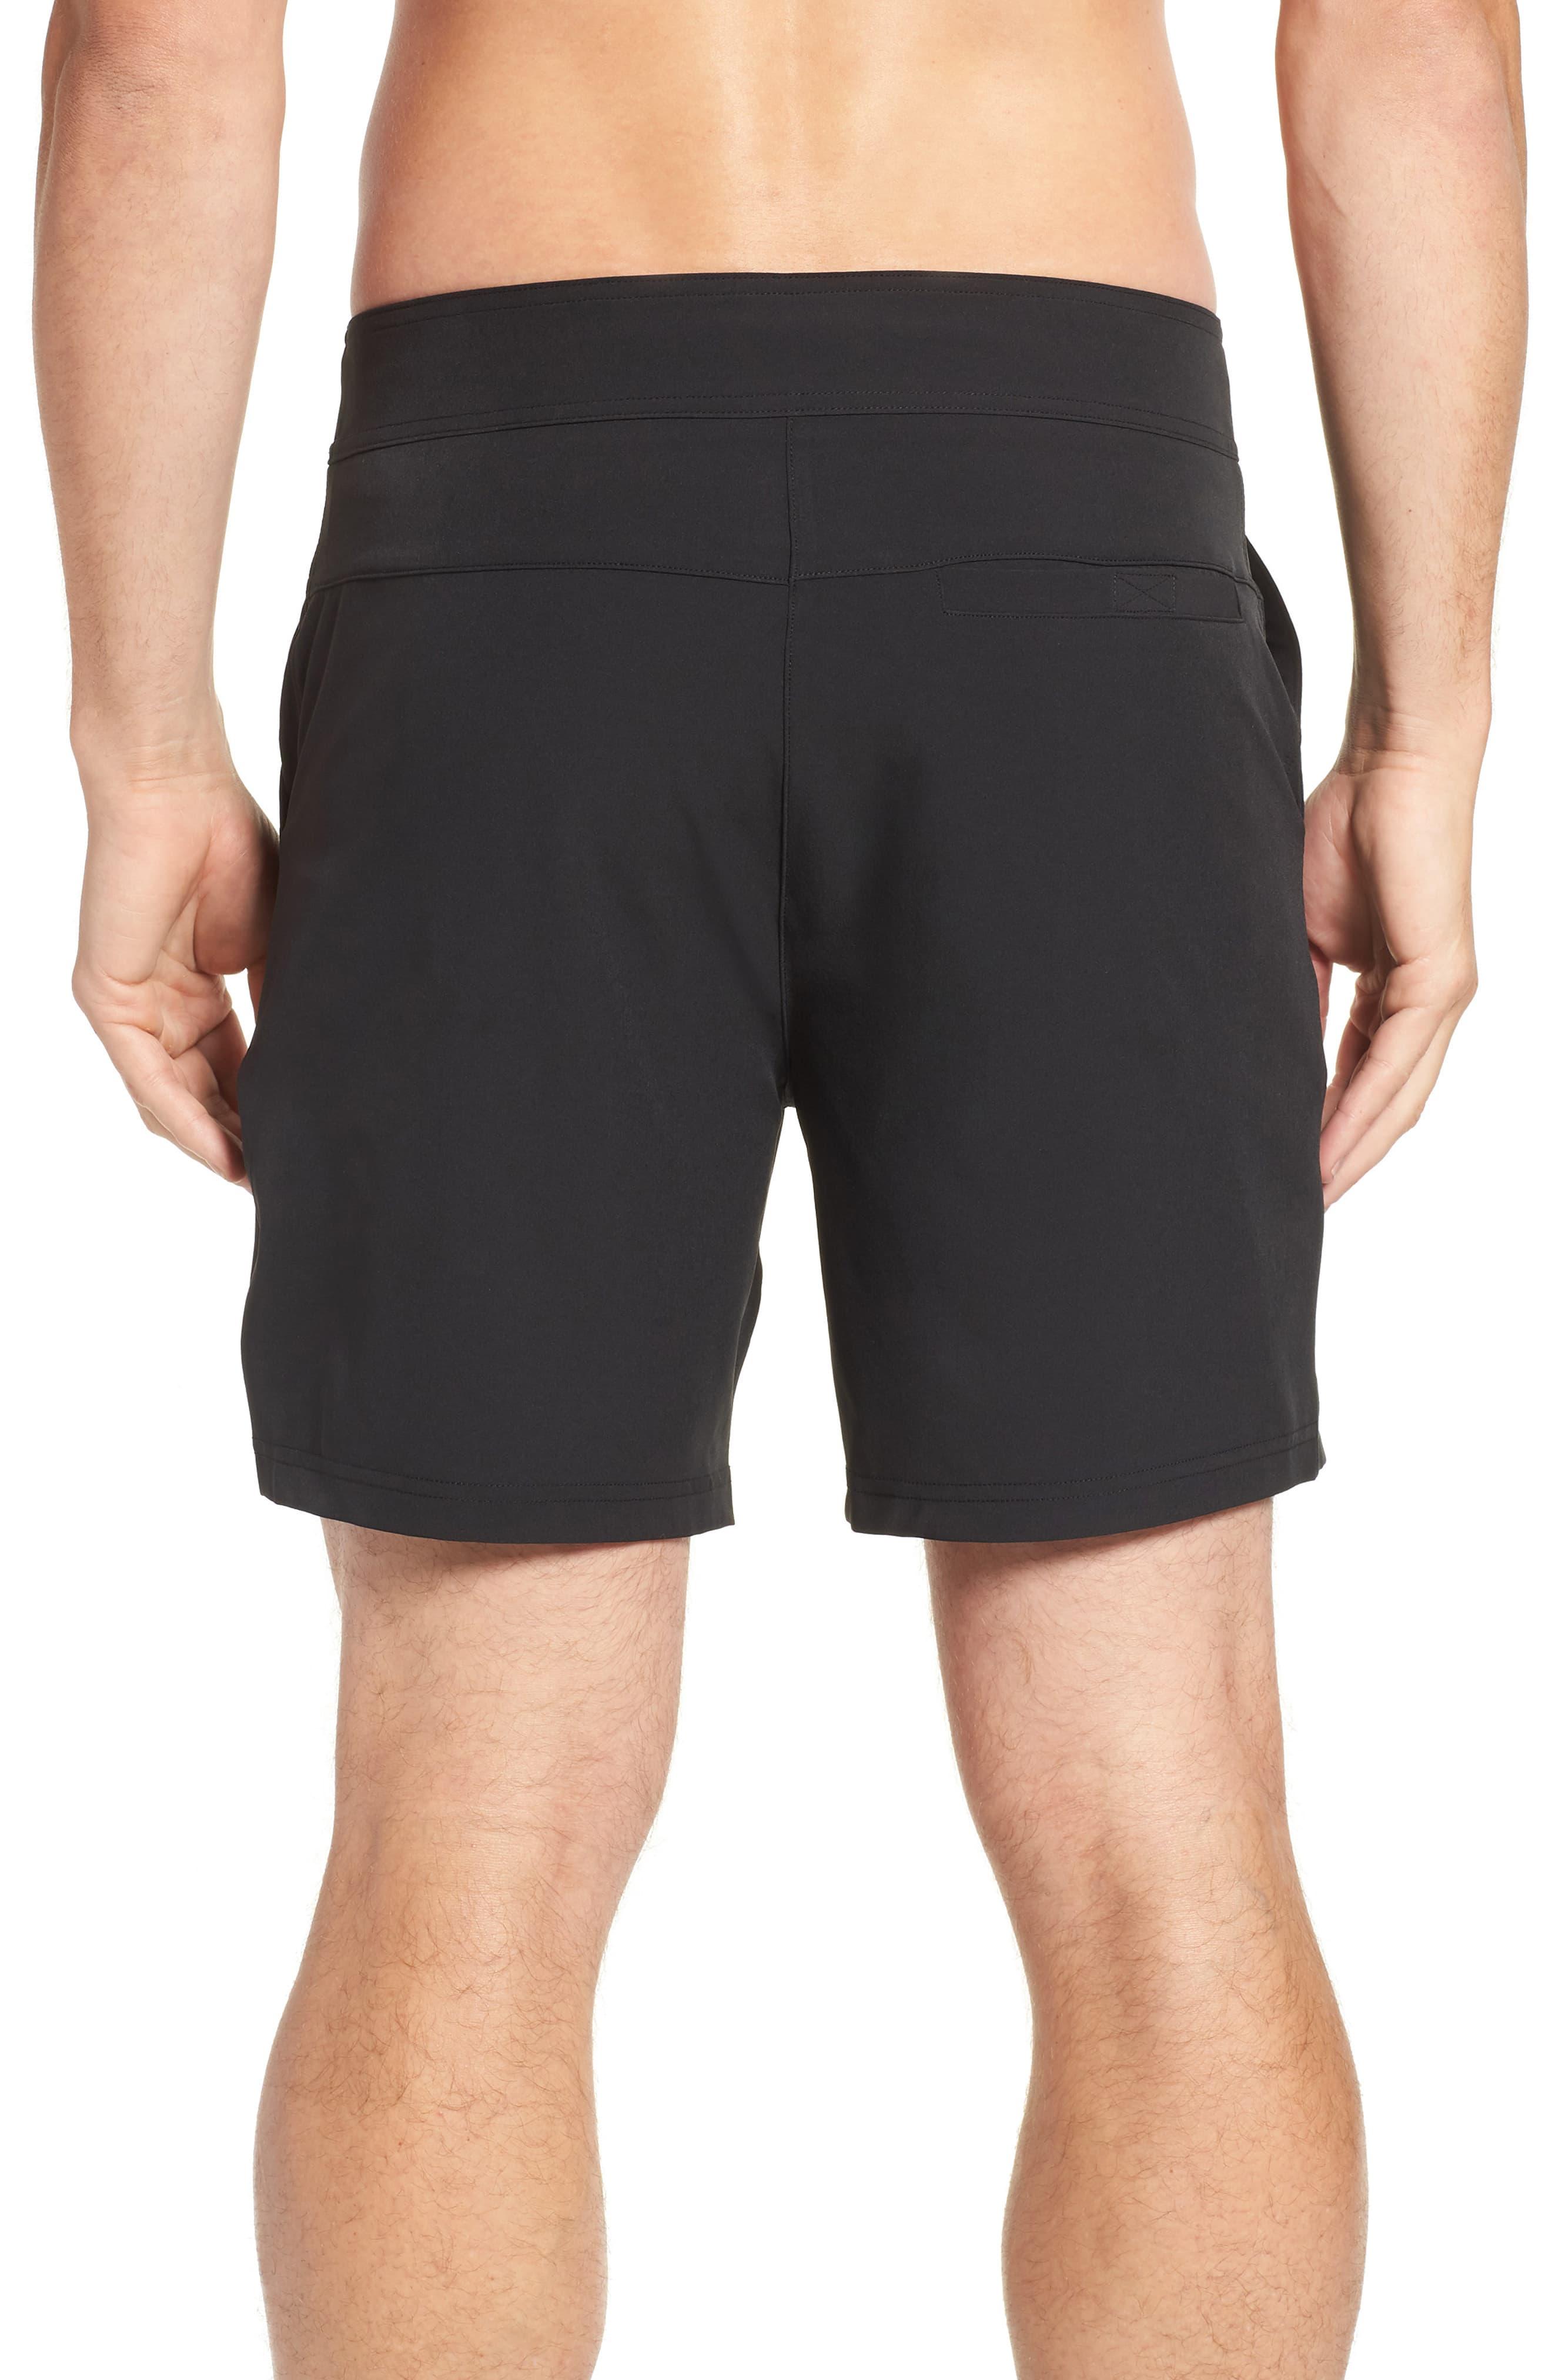 Alo Yoga Plow Board Shorts in Black for Men - Lyst